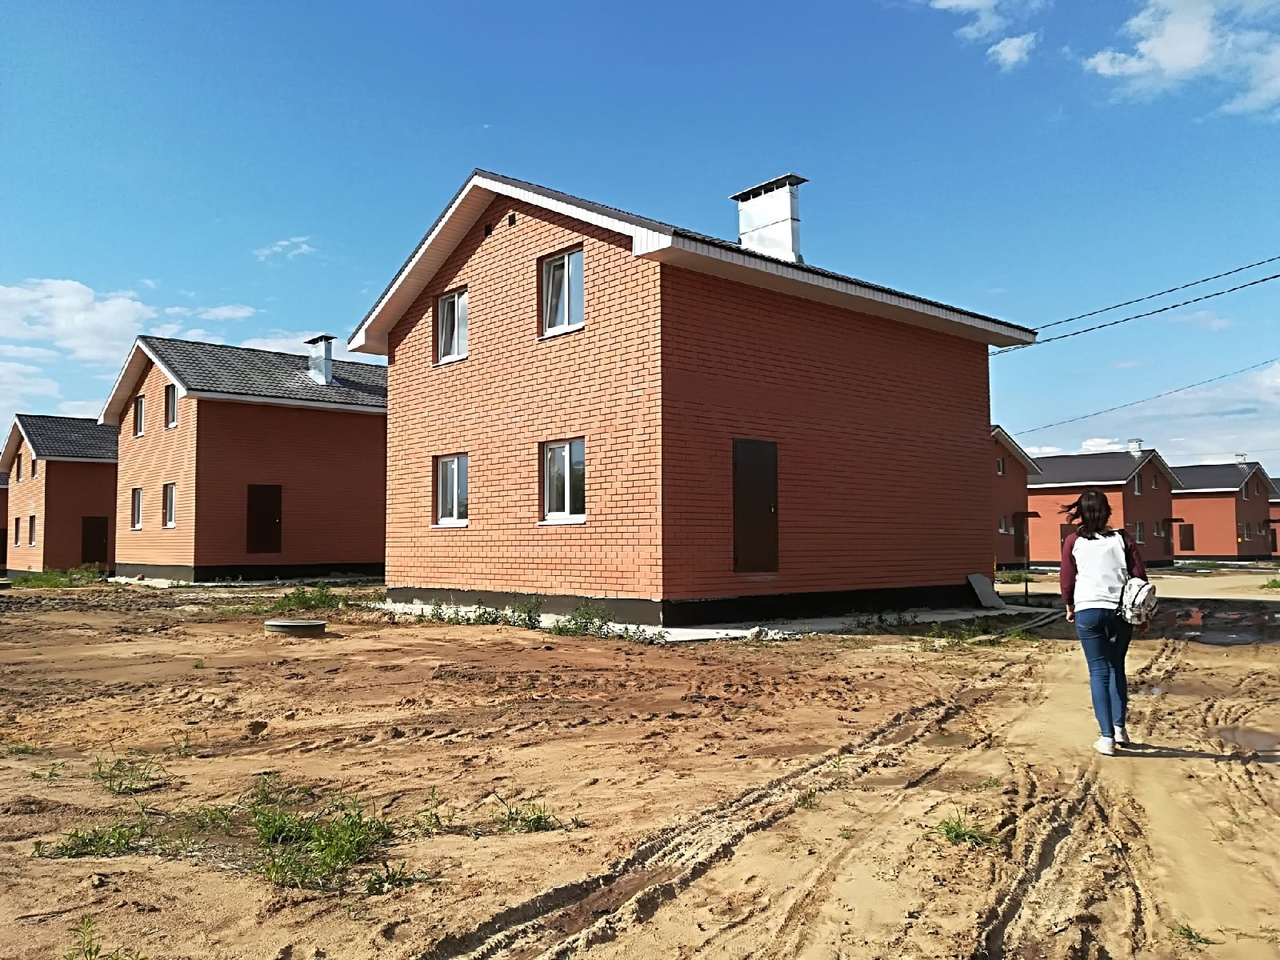 Семьи смогут получить до 450 000 рублей на постройку своего дома или покупку недостроя